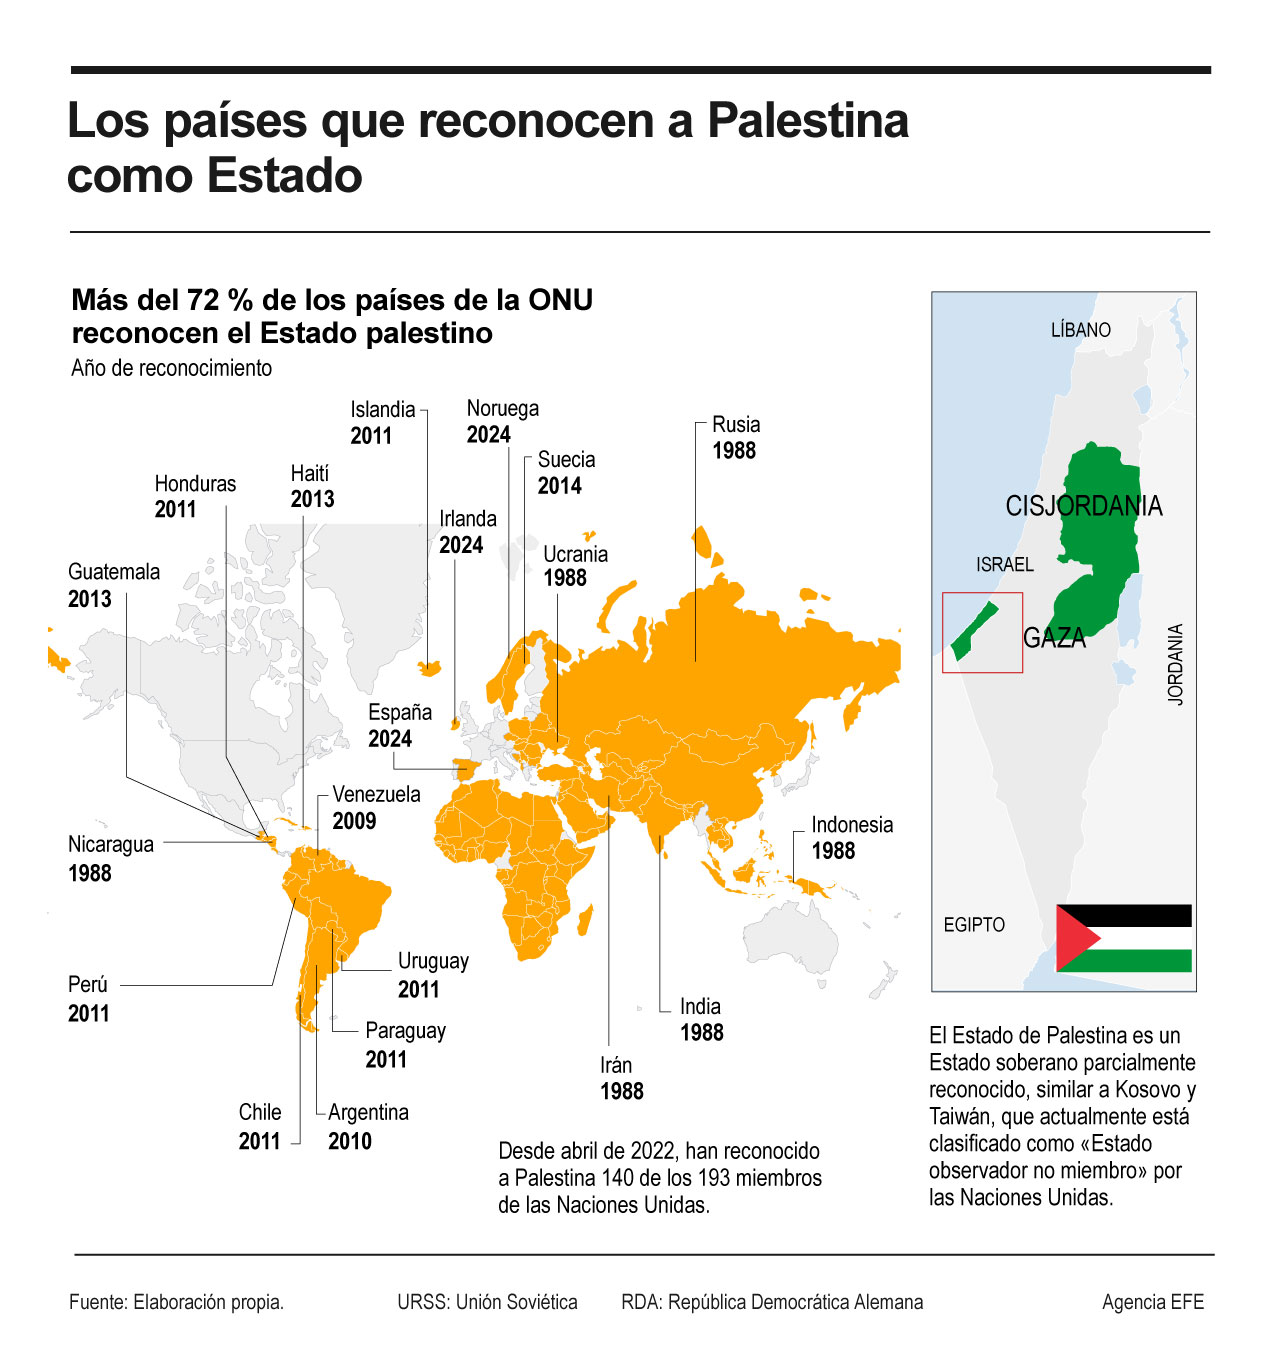 Los países que reconocen a Palestina como Estado